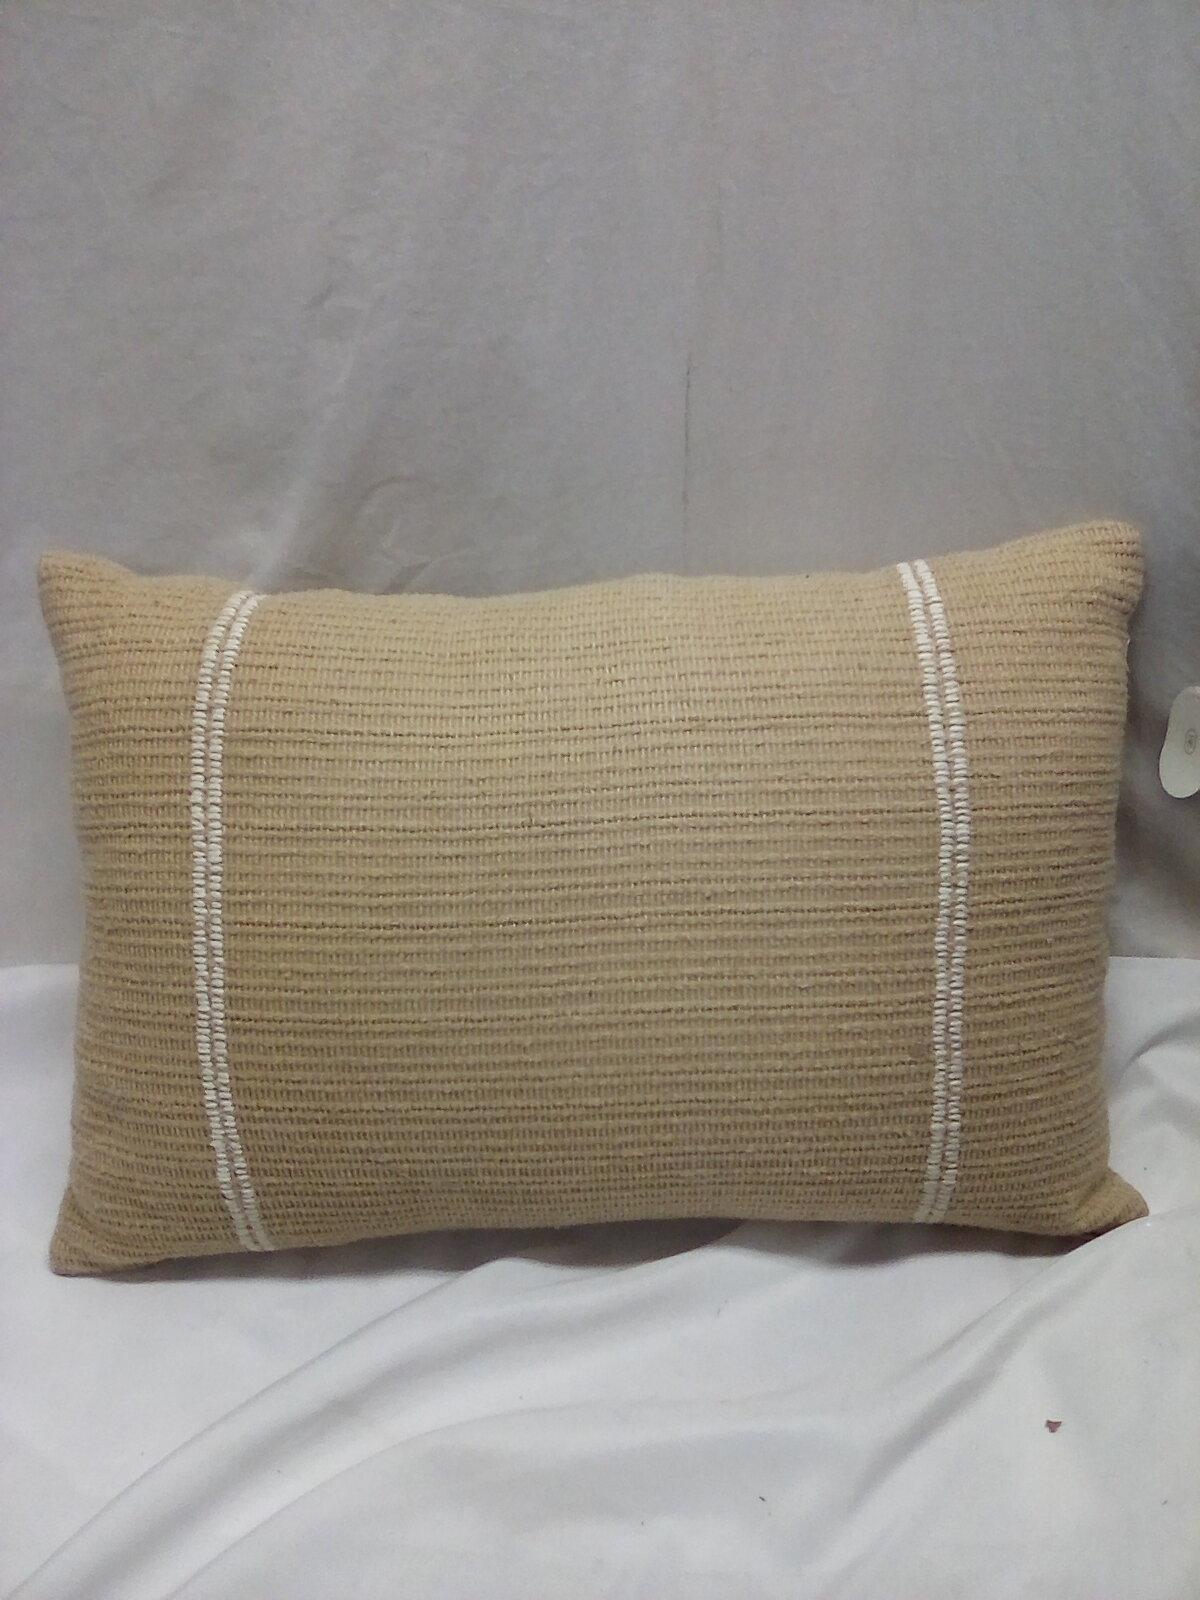 Threshold Tan Striped Throw Pillow. 18” x 12”